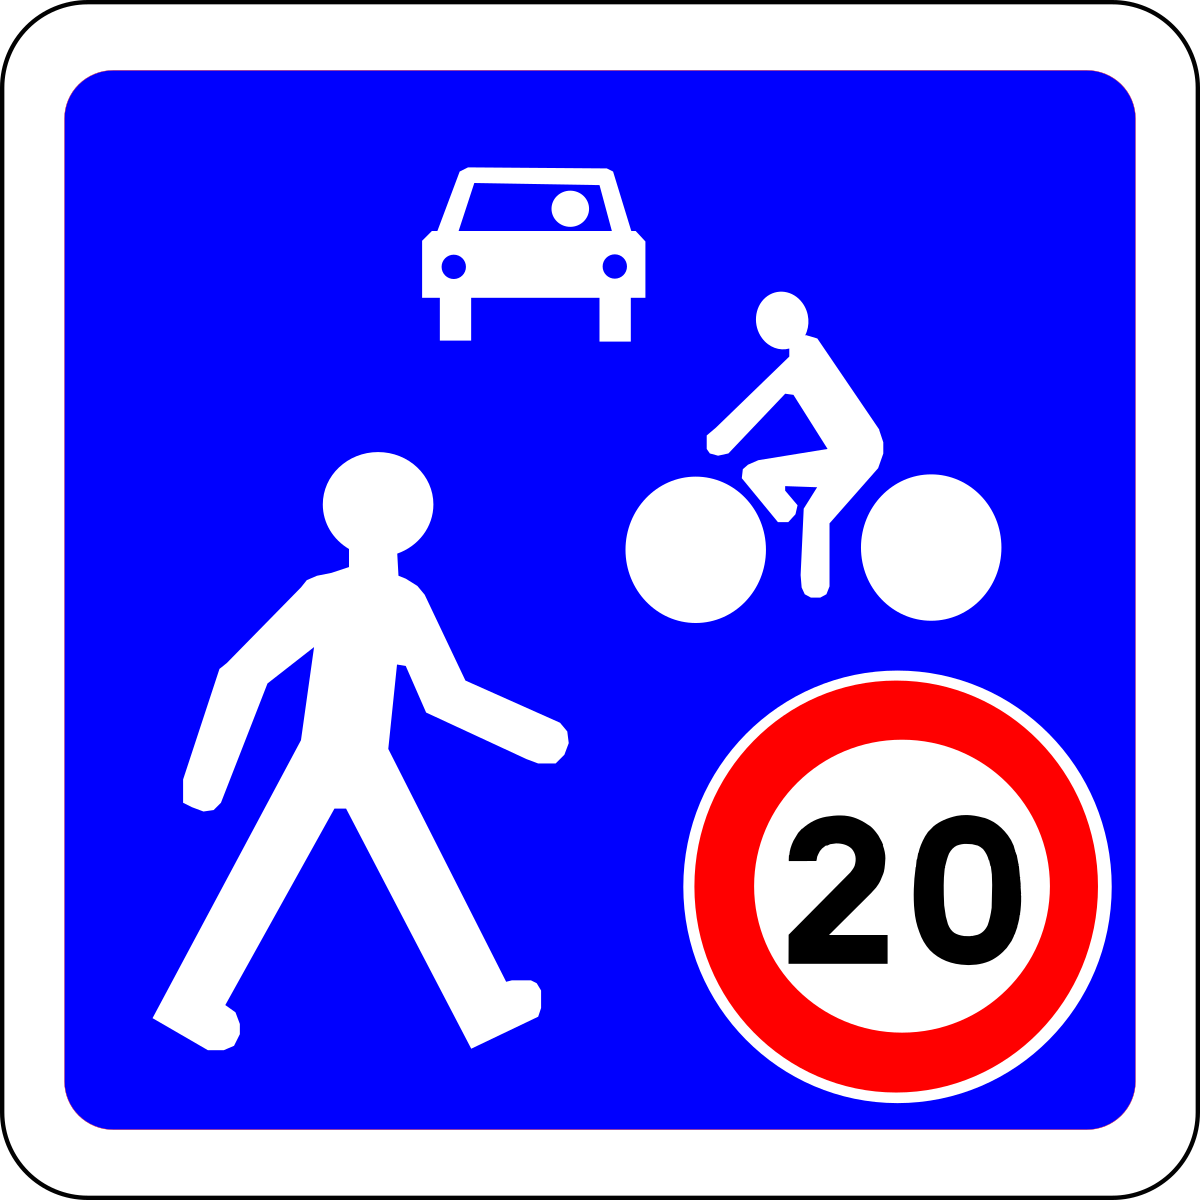 Panneau sur fond bleu avec un piéton, un cycliste, une voiture en blanc et un panneau de limitation de vitesse à 20 km/h.